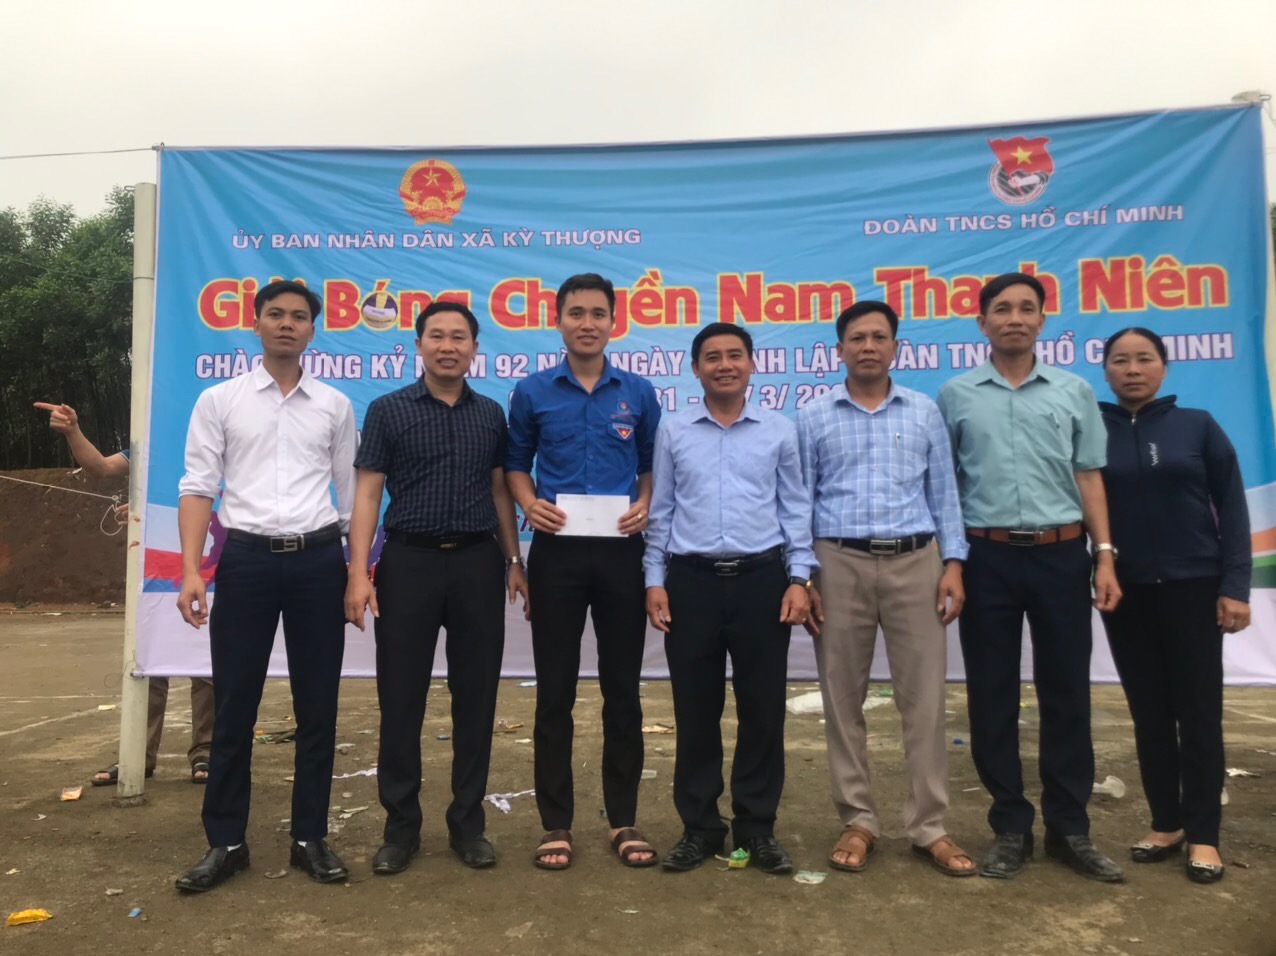 Ban văn hóa thông tin xã Kỳ Thượng phối hợp với Đoàn thanh niên Khai mạc giải bóng chuyền nam thanh niên chào mừng kỷ niệm 92 năm ngày ngày thành lập Đoàn TNCS Hồ Chí Minh